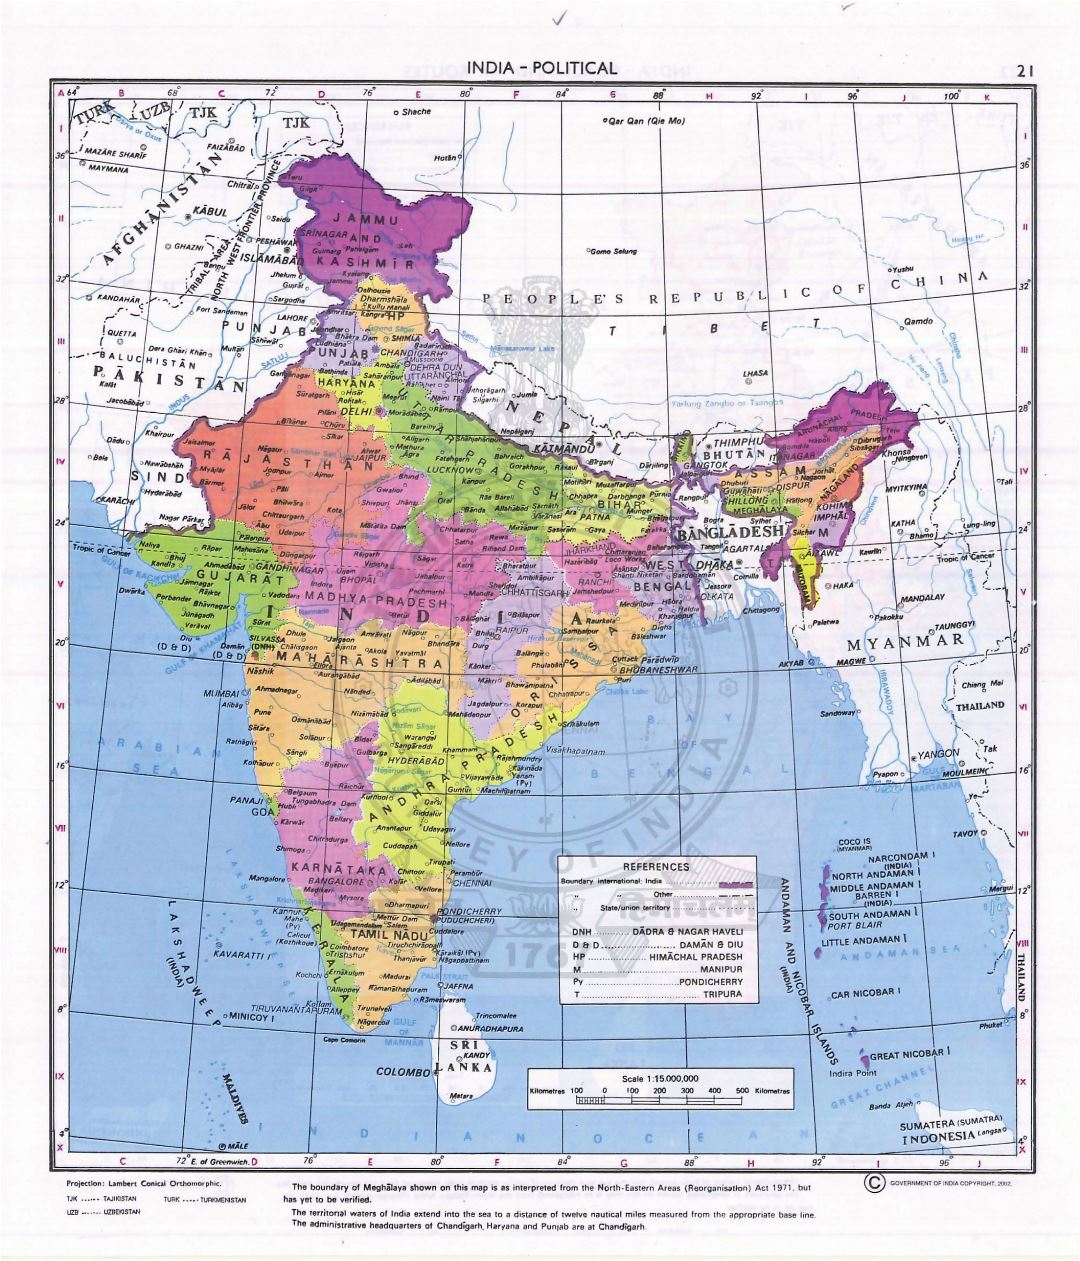 Grande detallado mapa político y administrativo de la India